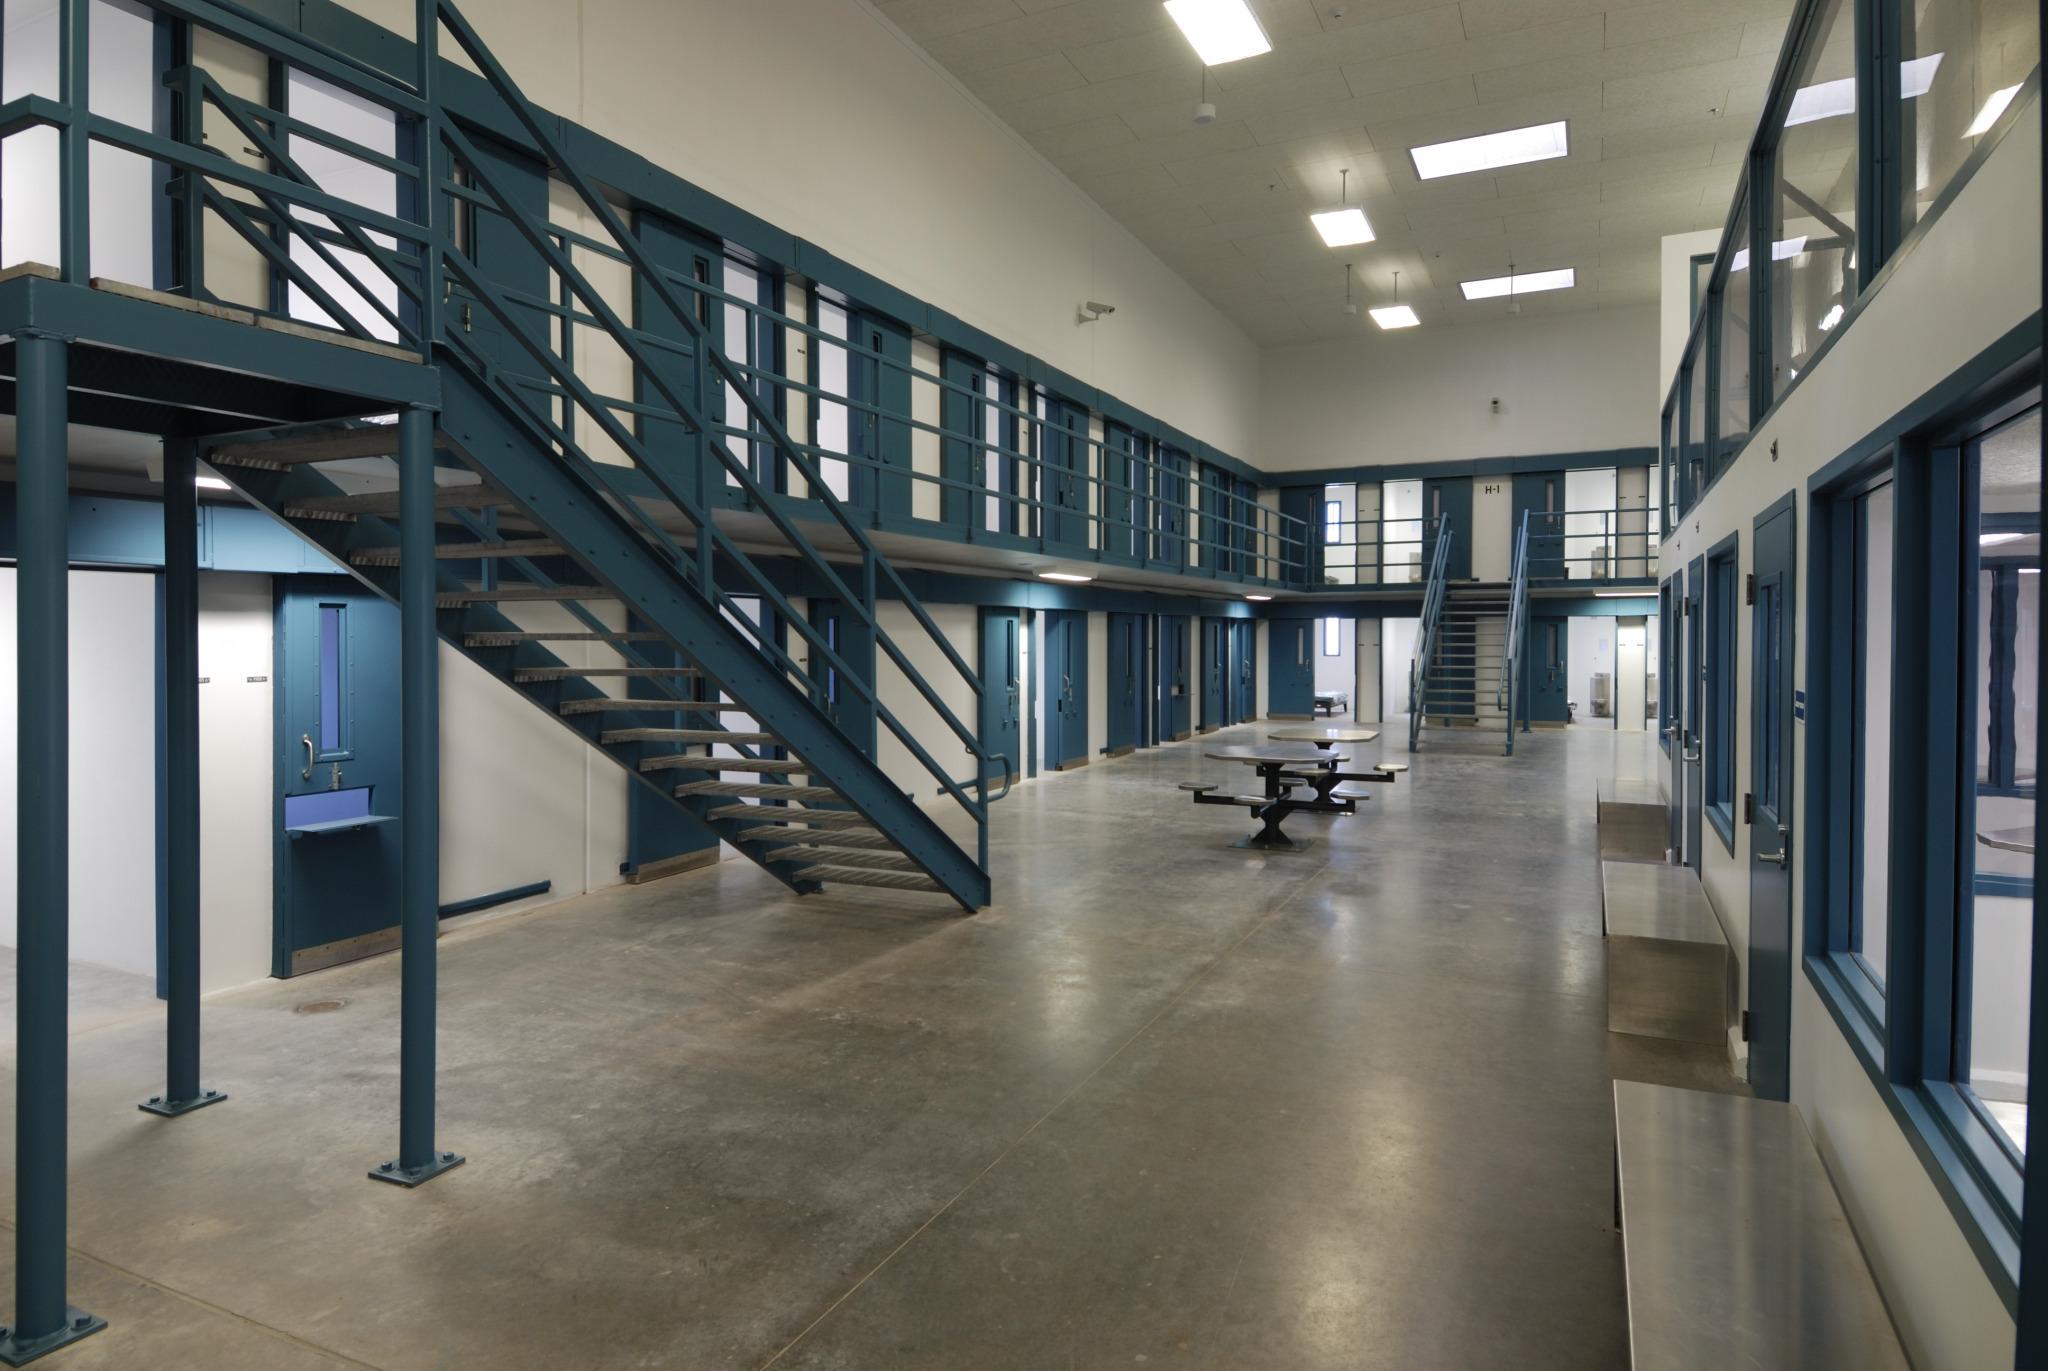 Suwannee Correctional